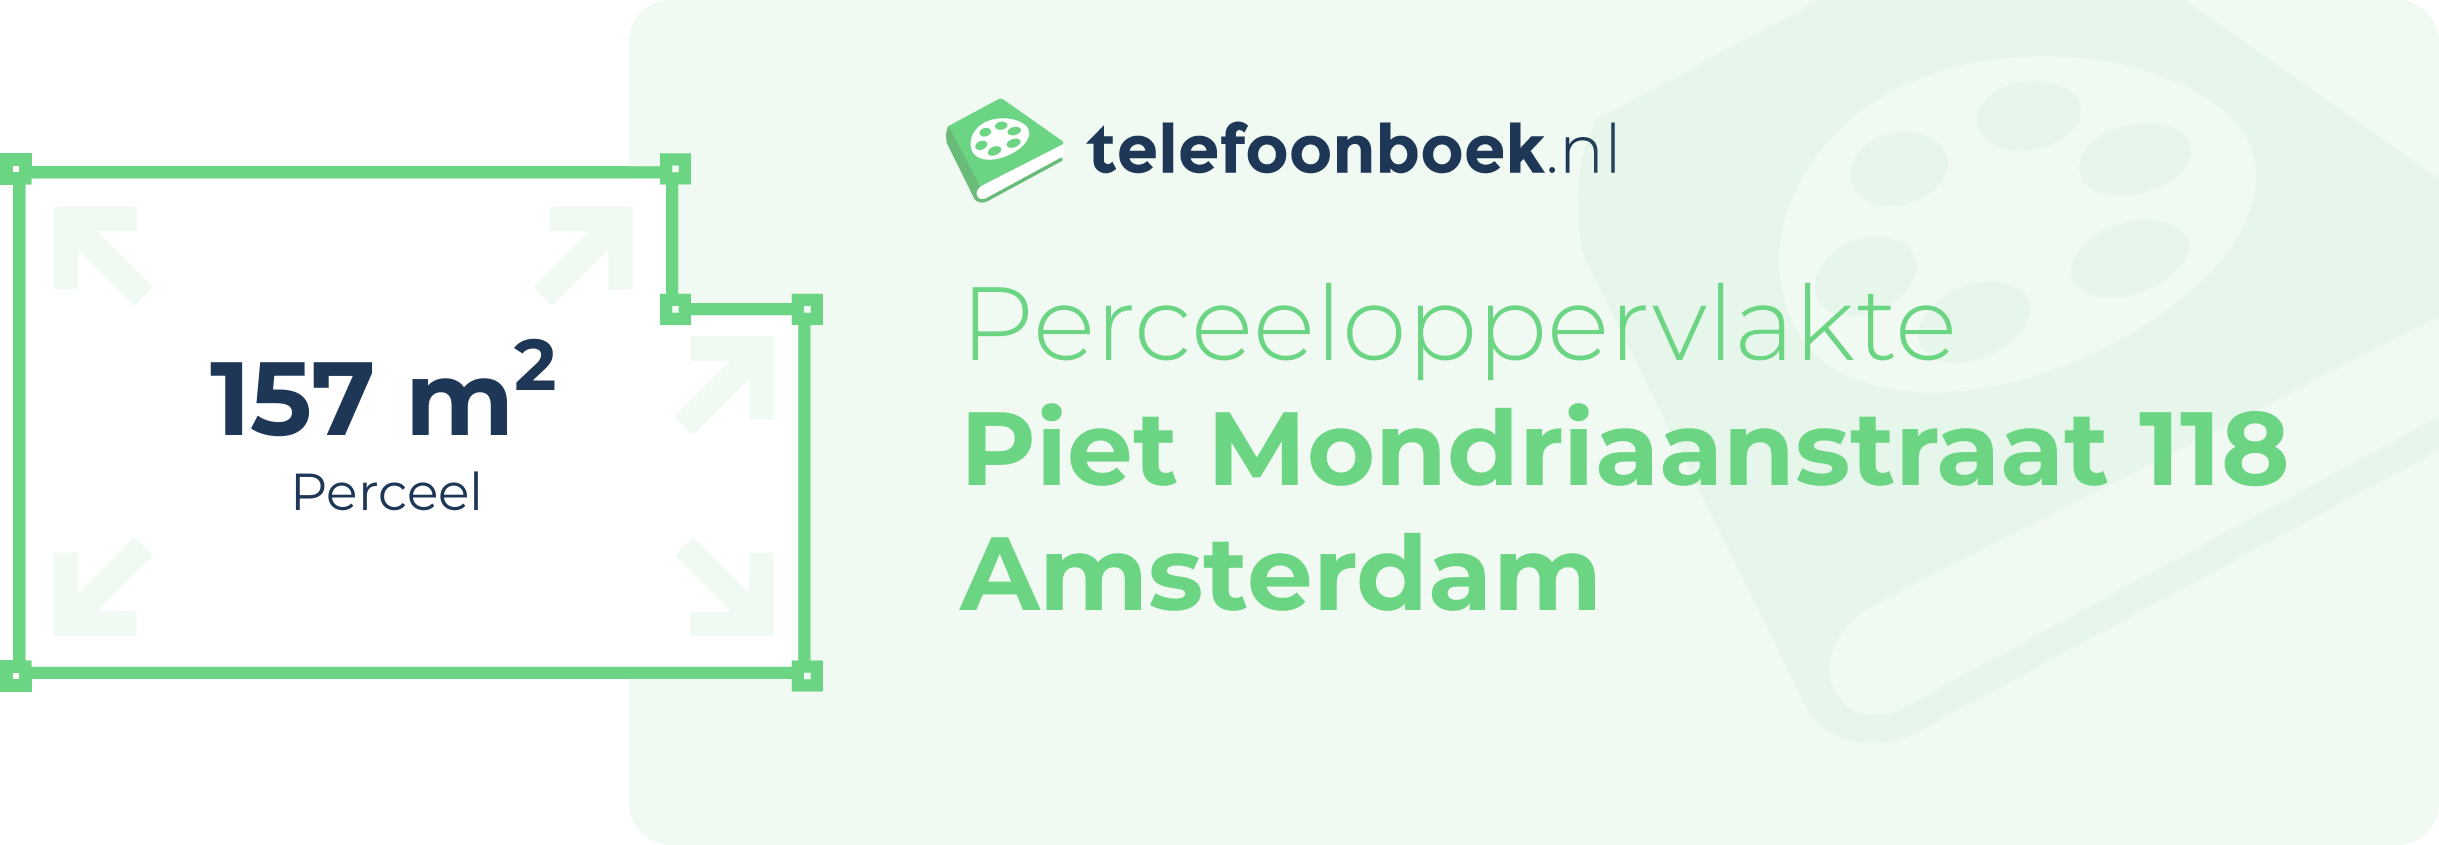 Perceeloppervlakte Piet Mondriaanstraat 118 Amsterdam